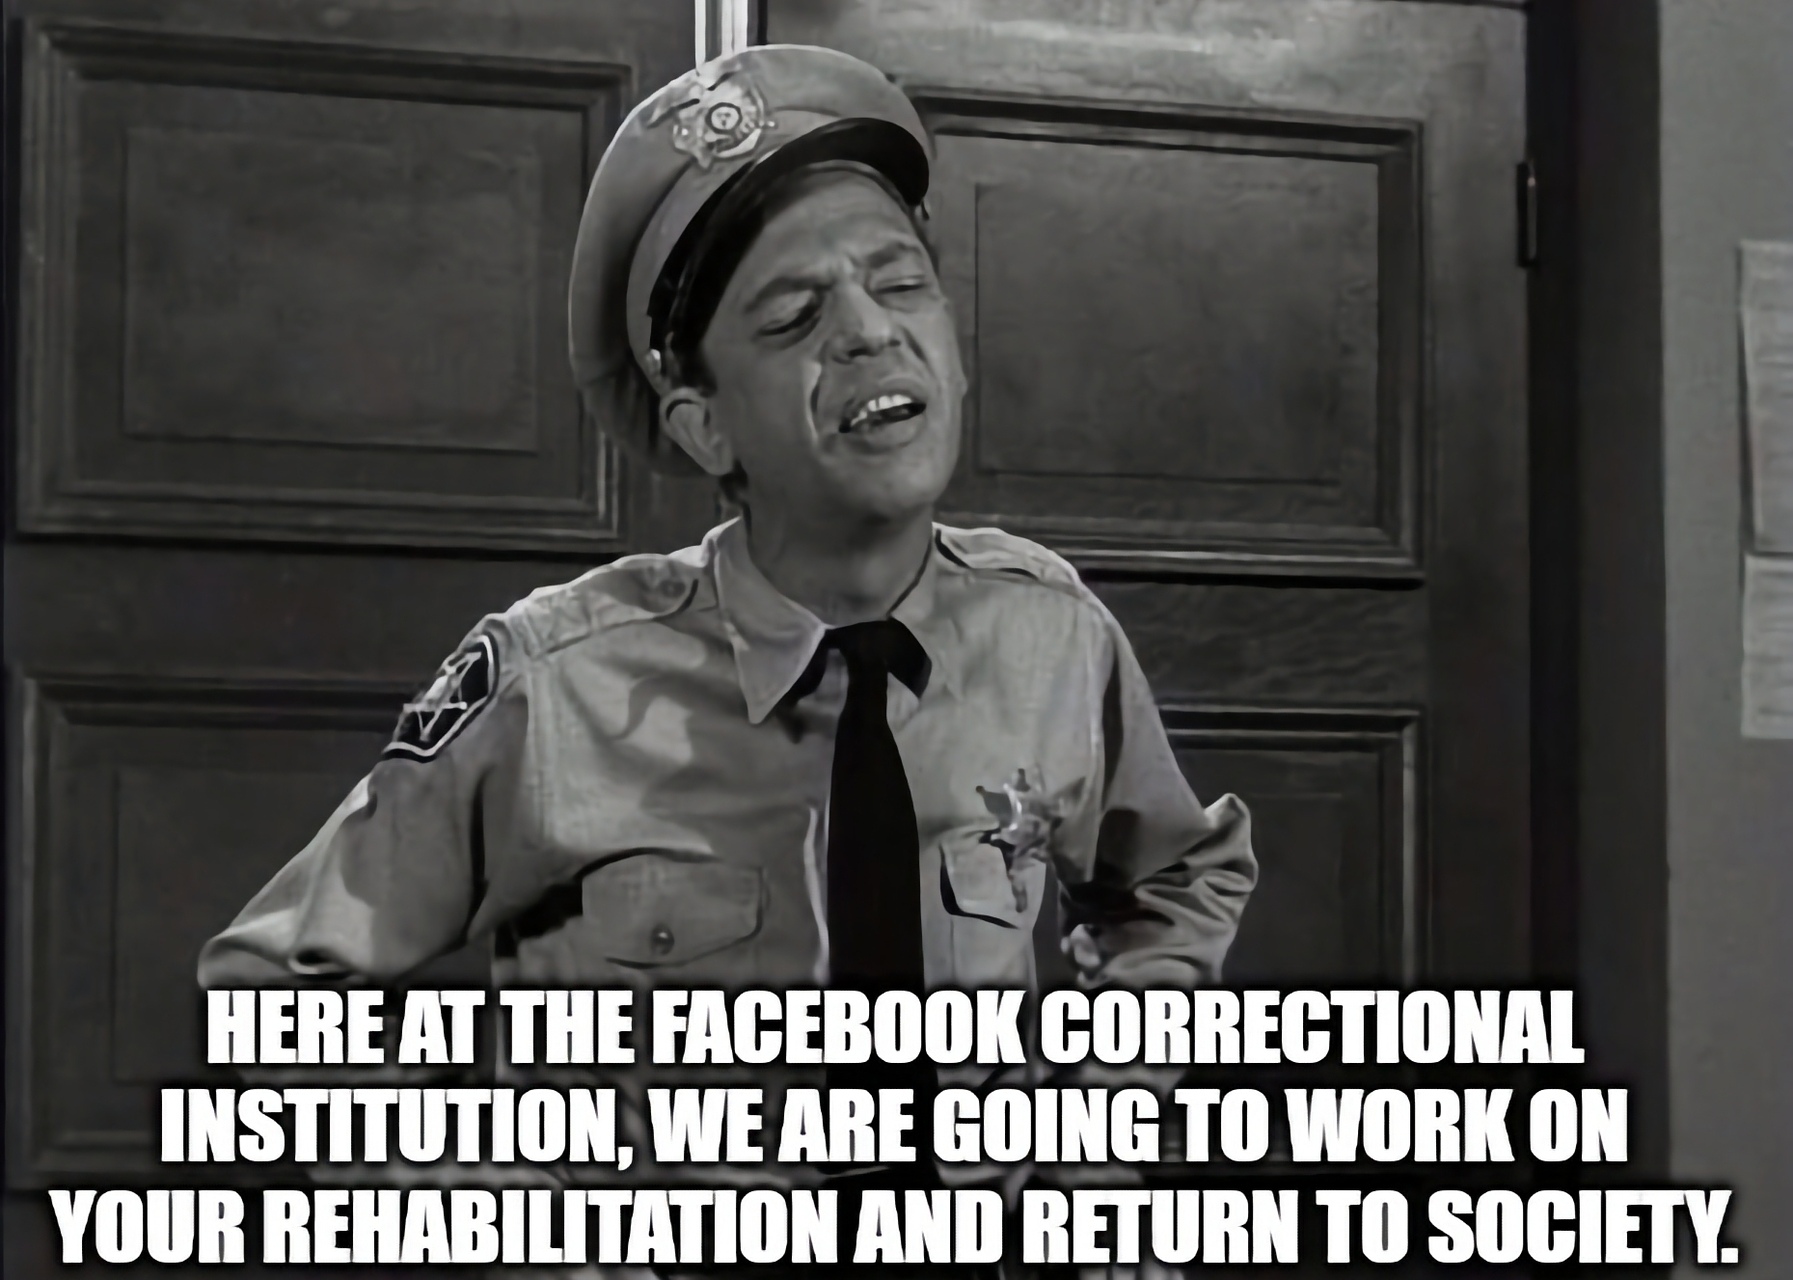 Facebook: Facebookтун модерация саясатынан шыктанган "мем" (б.а. Интернеттеги сатиралык мультфильм) өтө күмөндүү деп табылган (Picture: imgflip.com)